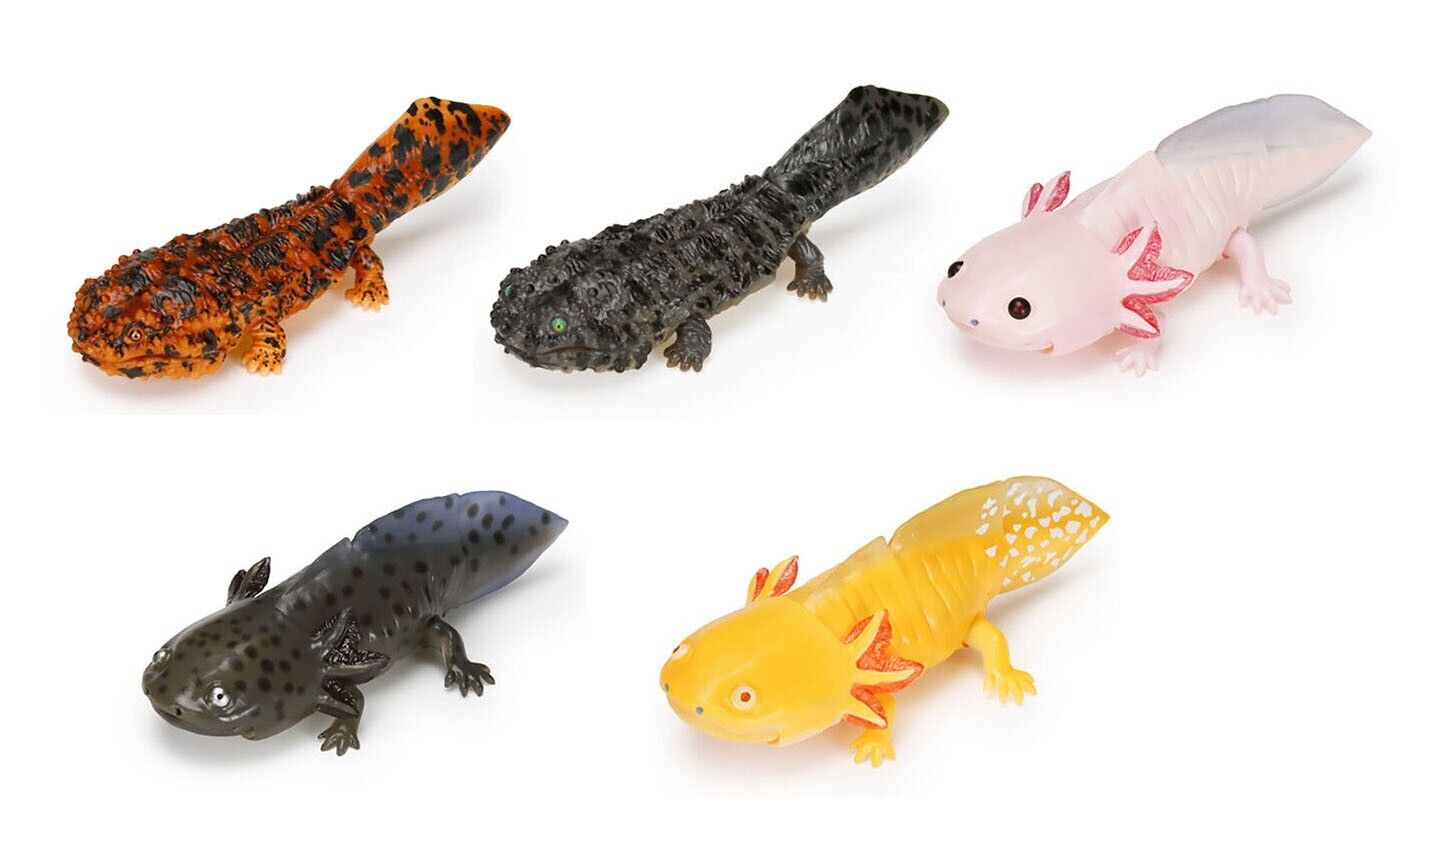 Diversity of Life on Earth Japanese Giant Salamander & Axolotl Bandai Figure set